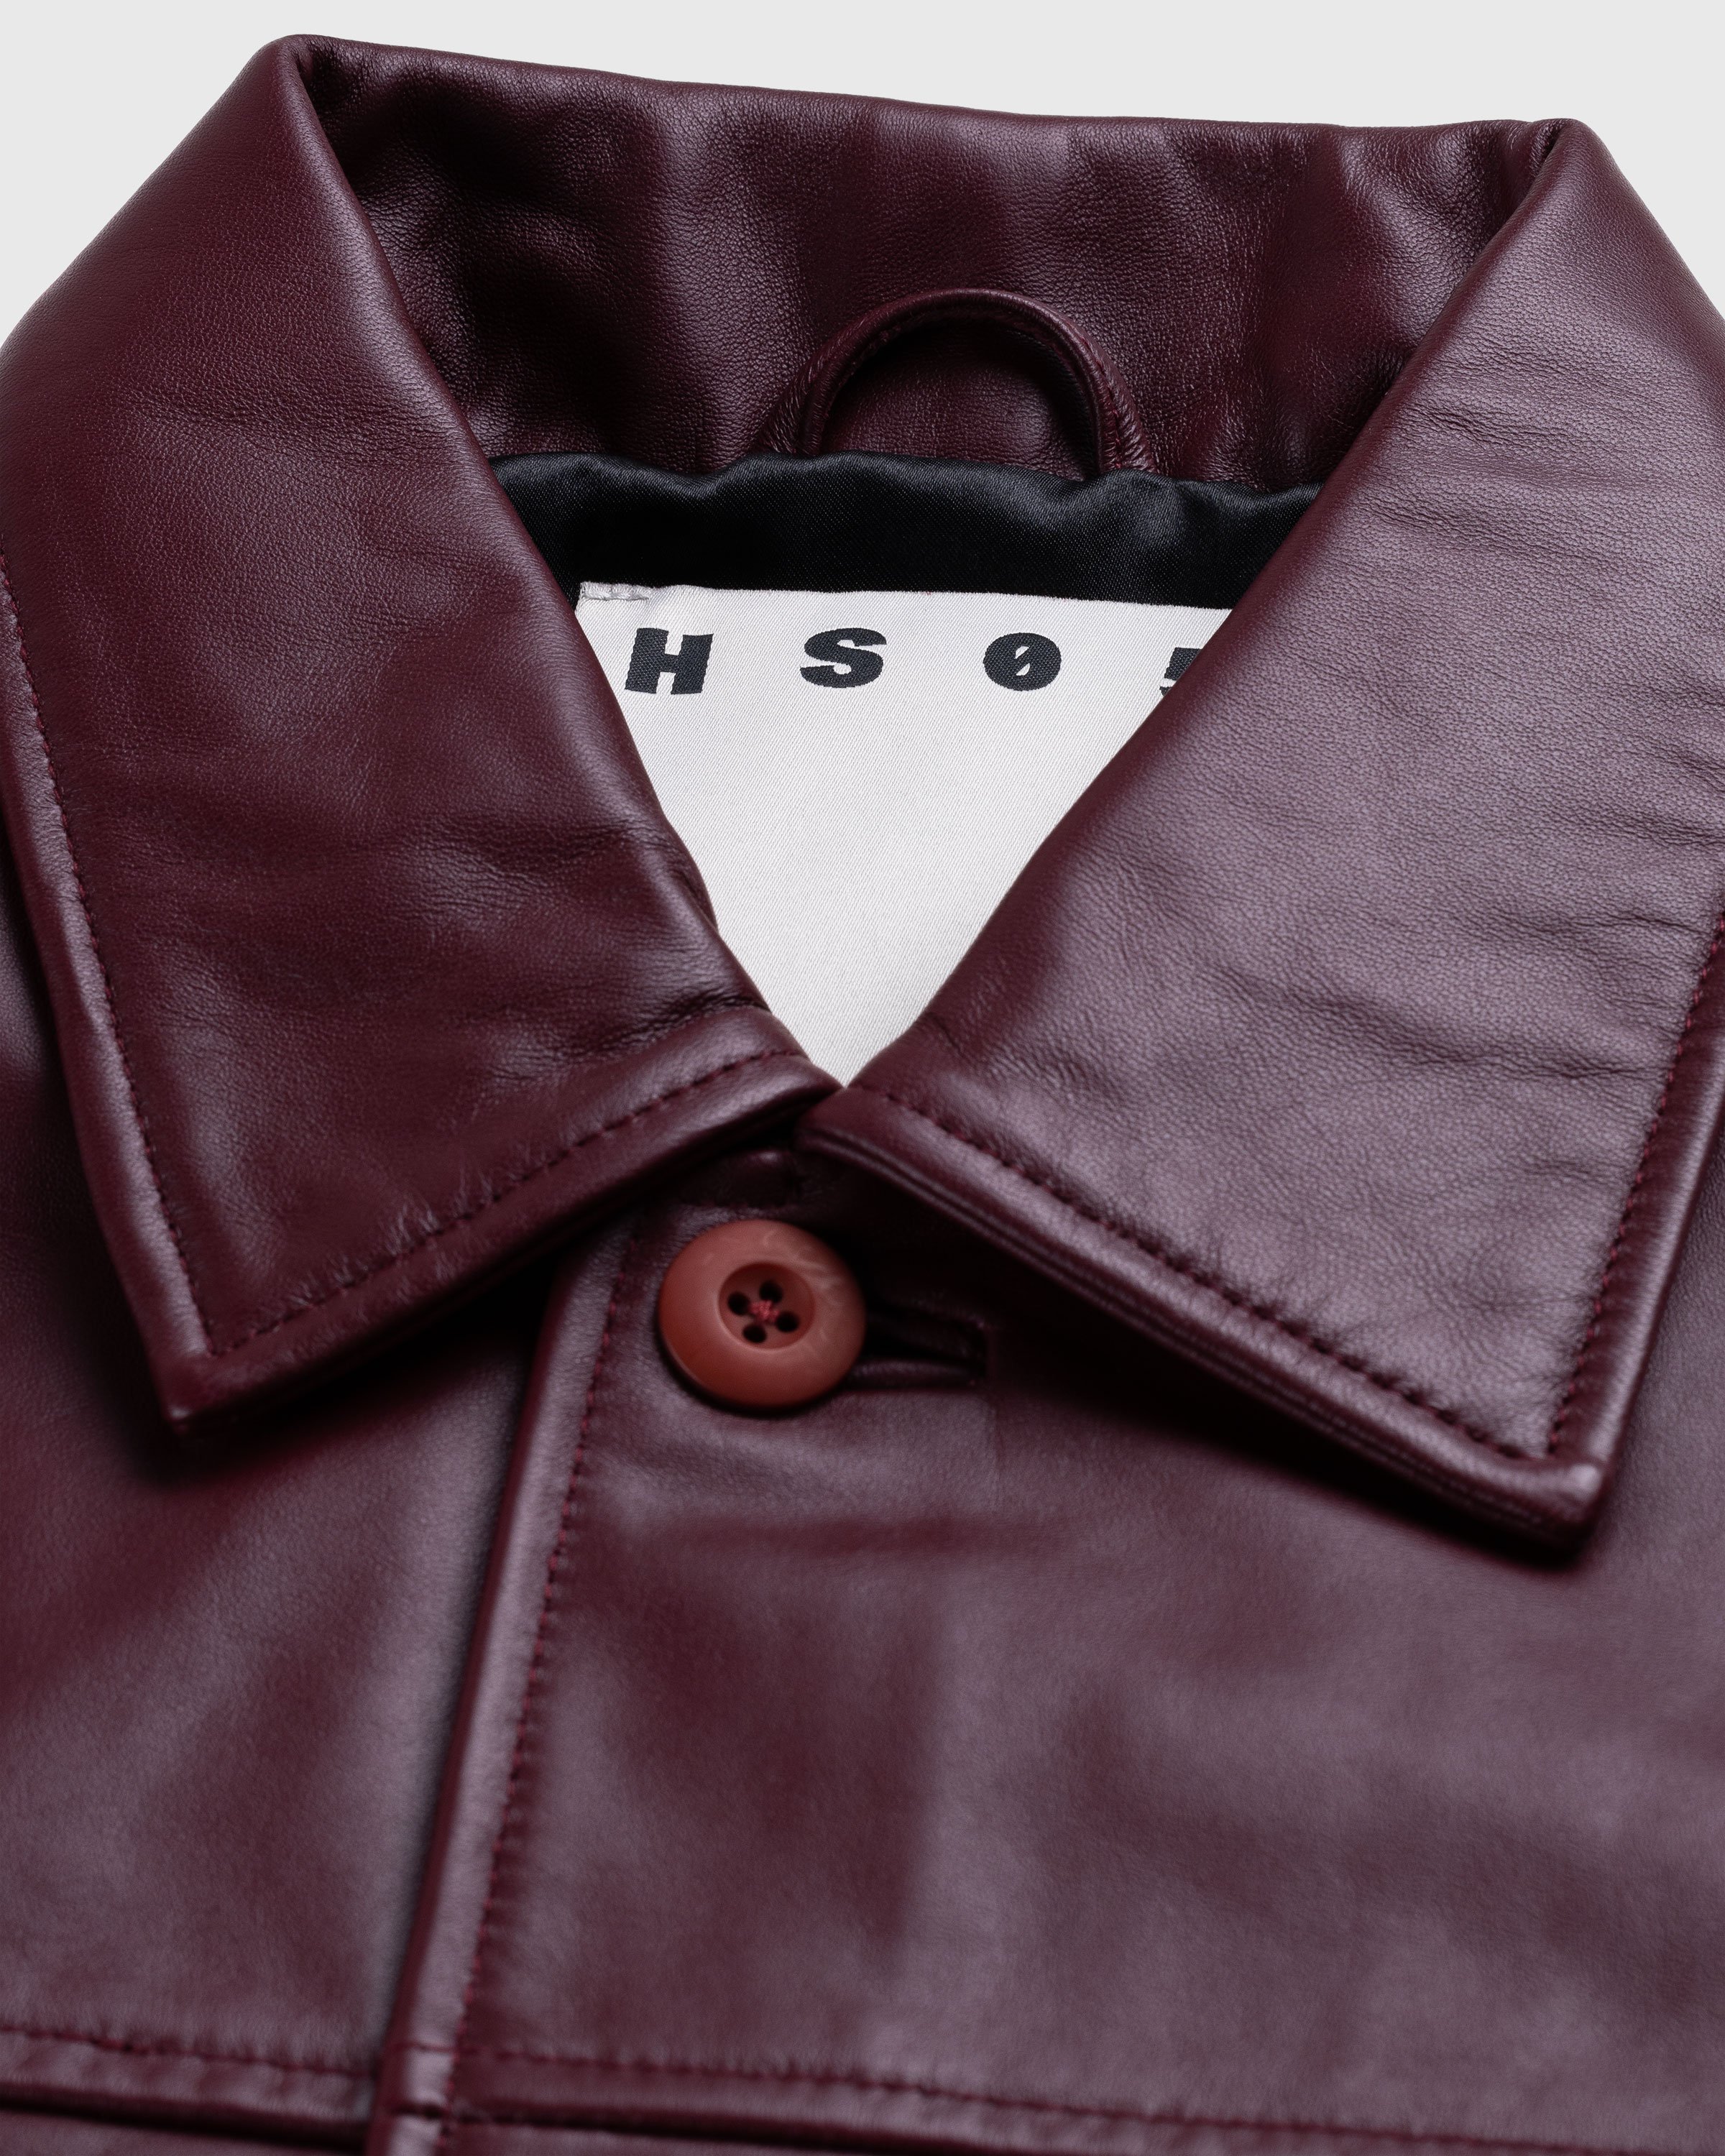 Highsnobiety HS05 - Leather Jacket Burgundy - Clothing - Red - Image 6